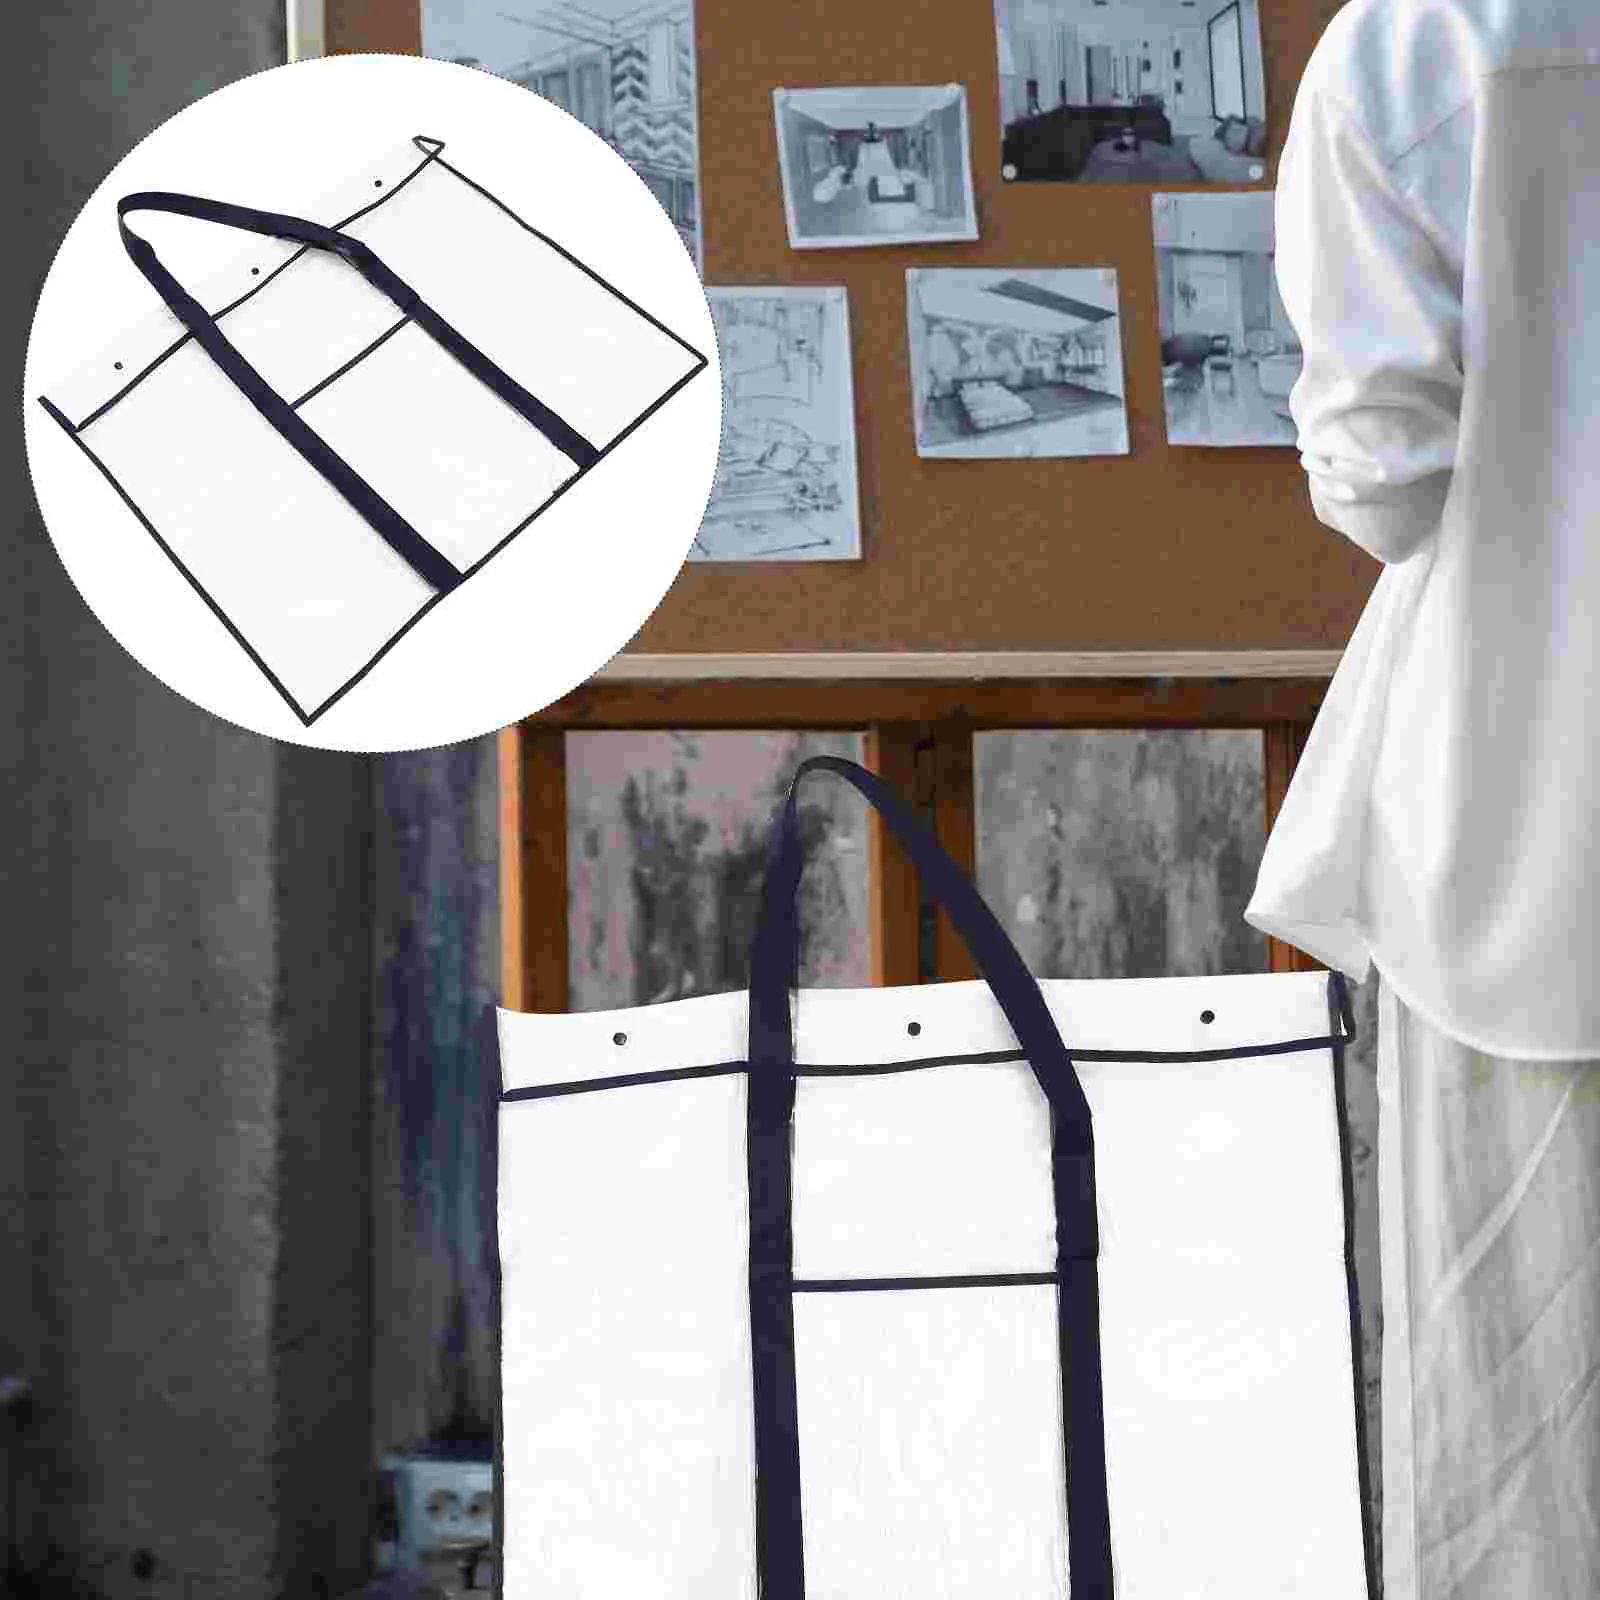  Прозрачная сумка для хранения Держатель файлов Рабочие сумки Наборы для детей Белая доска Холст Рисование ПВХ Произведение искусства Ребенок Большой 0